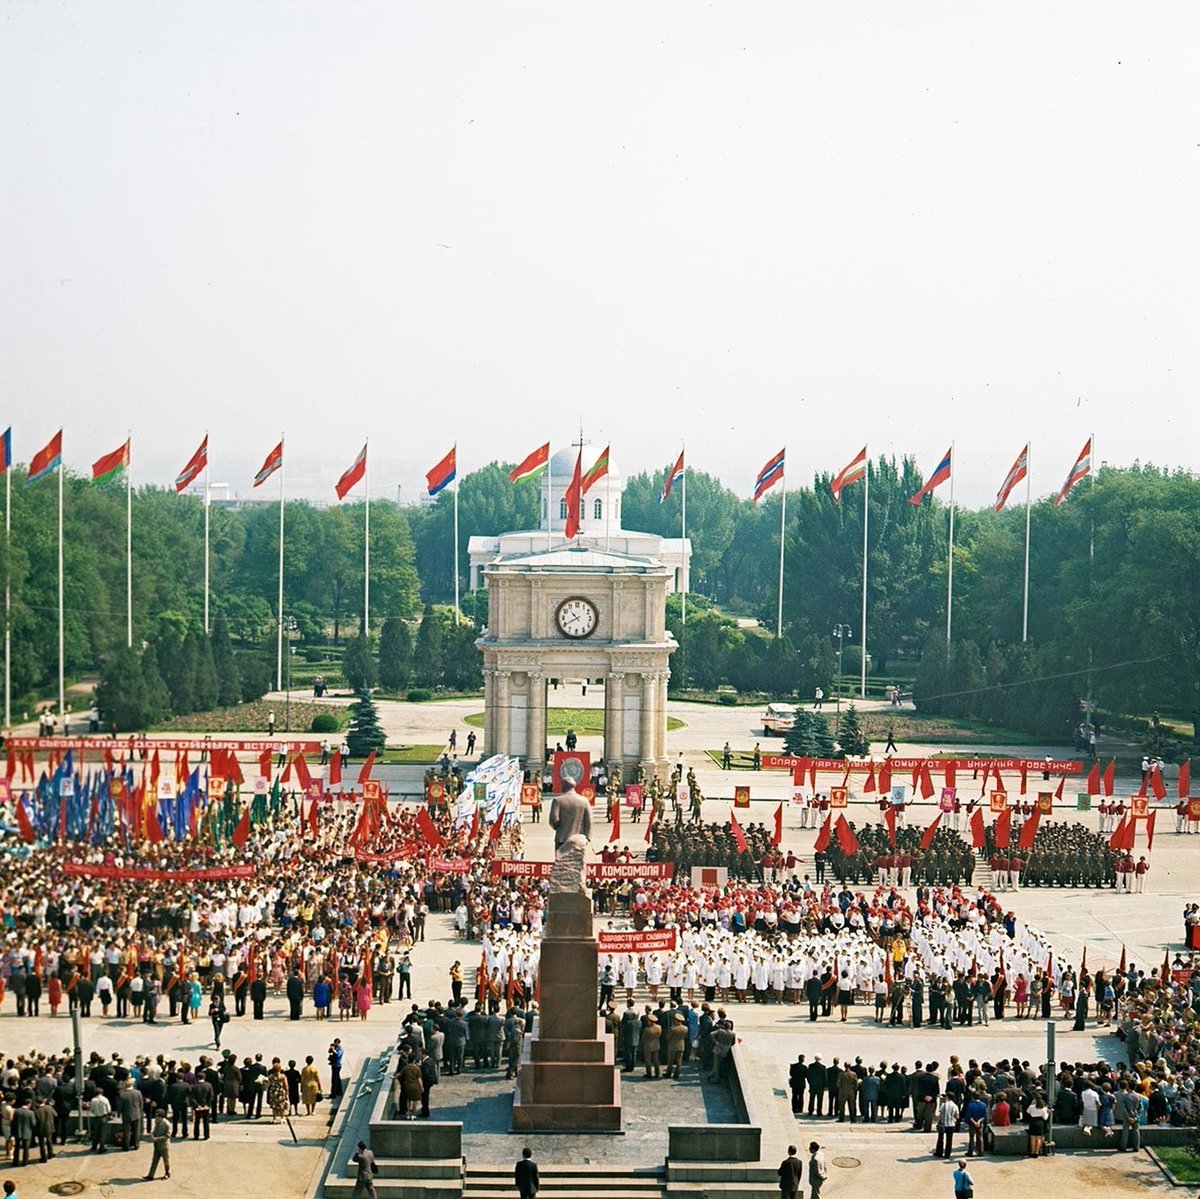 Celebration of Victory Day on Victory Square in Chișinău, Moldavian SSR, 1976 (photo by I. Kibzi)